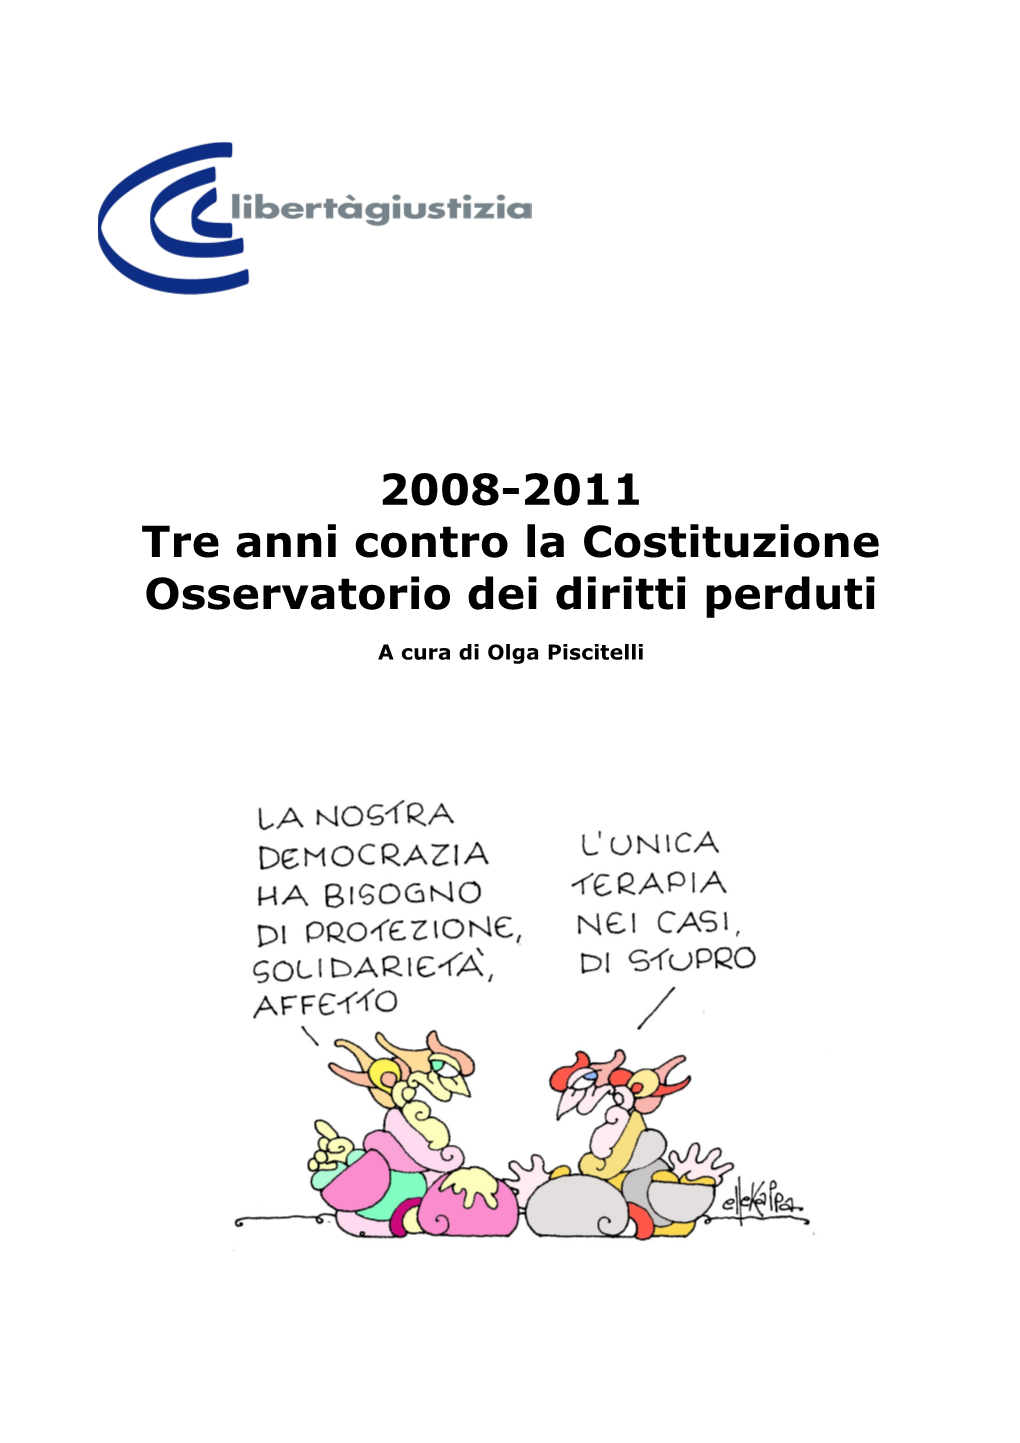 15 Marzo 2006, Calderoli Ammette: Ho Scritto Una Porcata